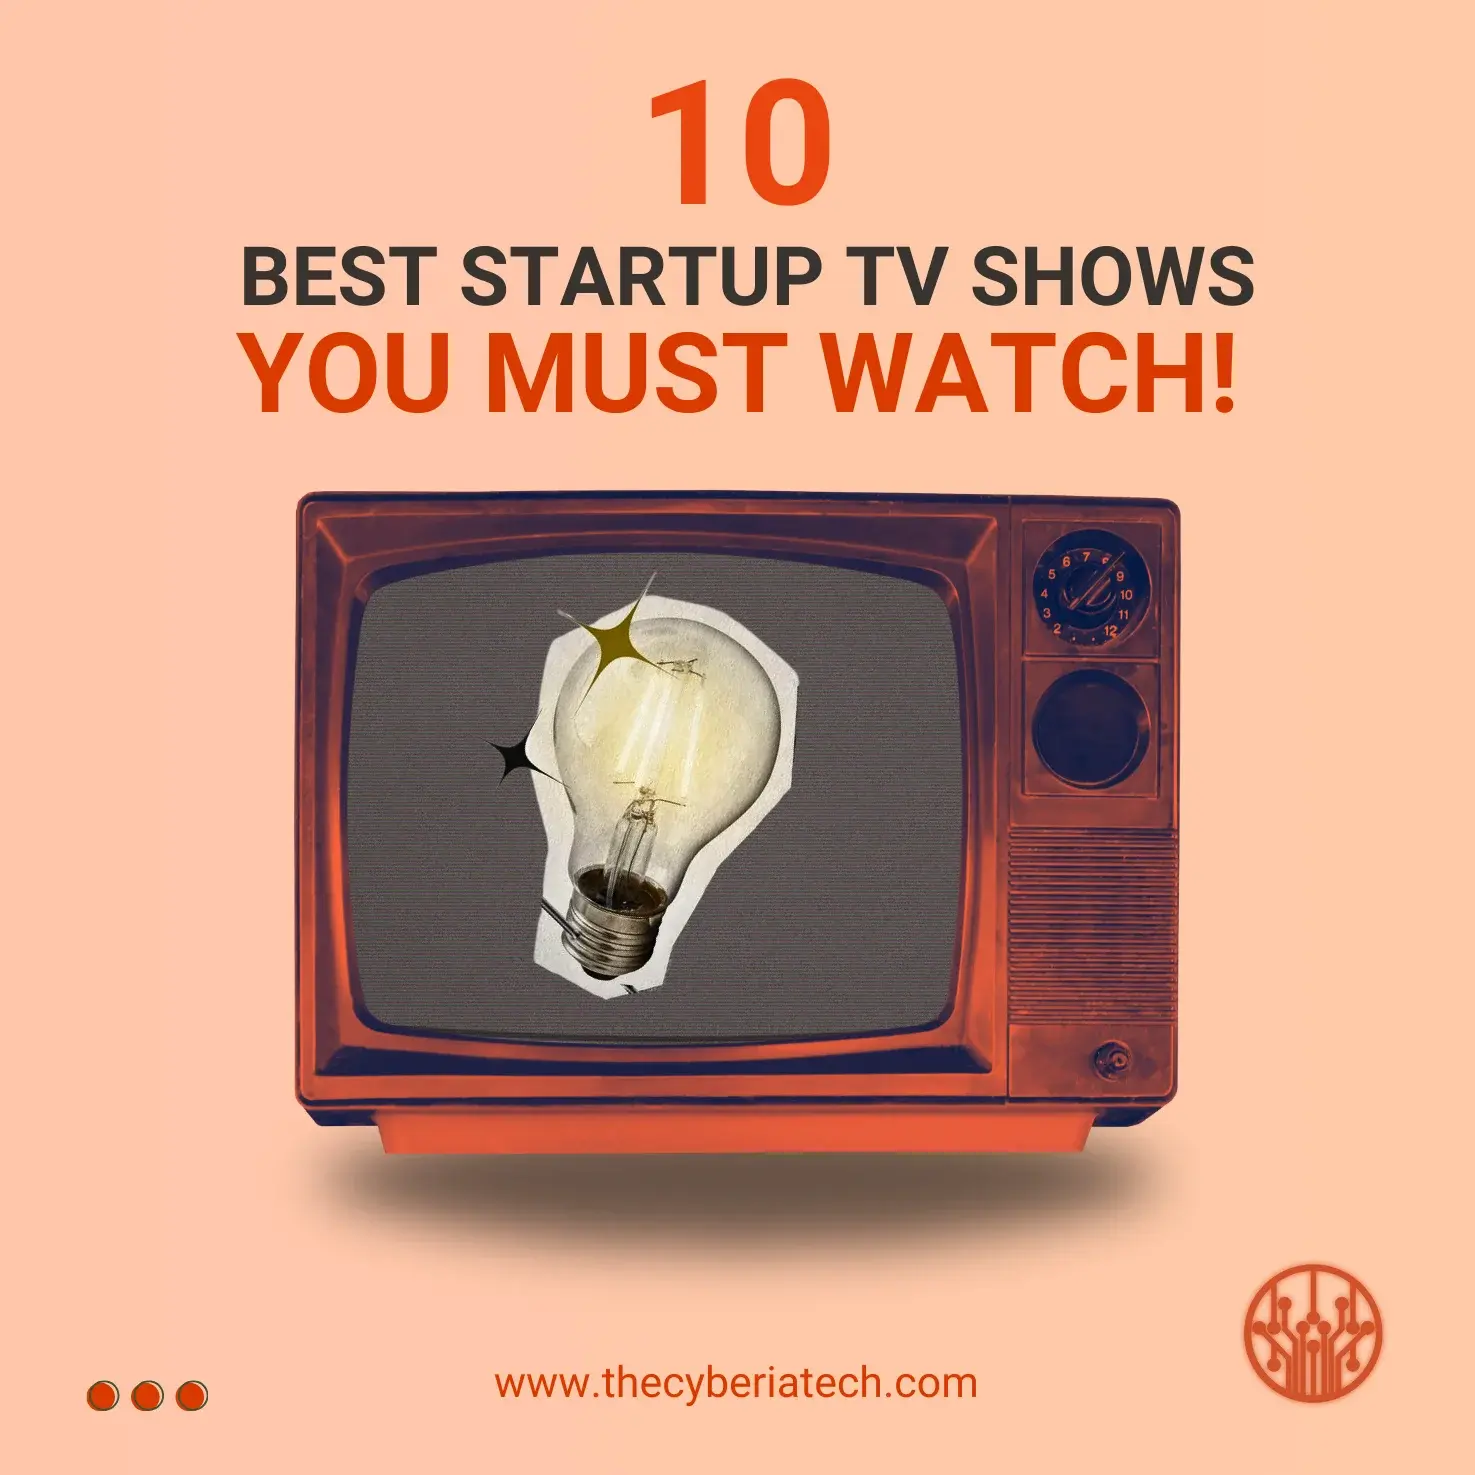 10 Best Startup TV shows list